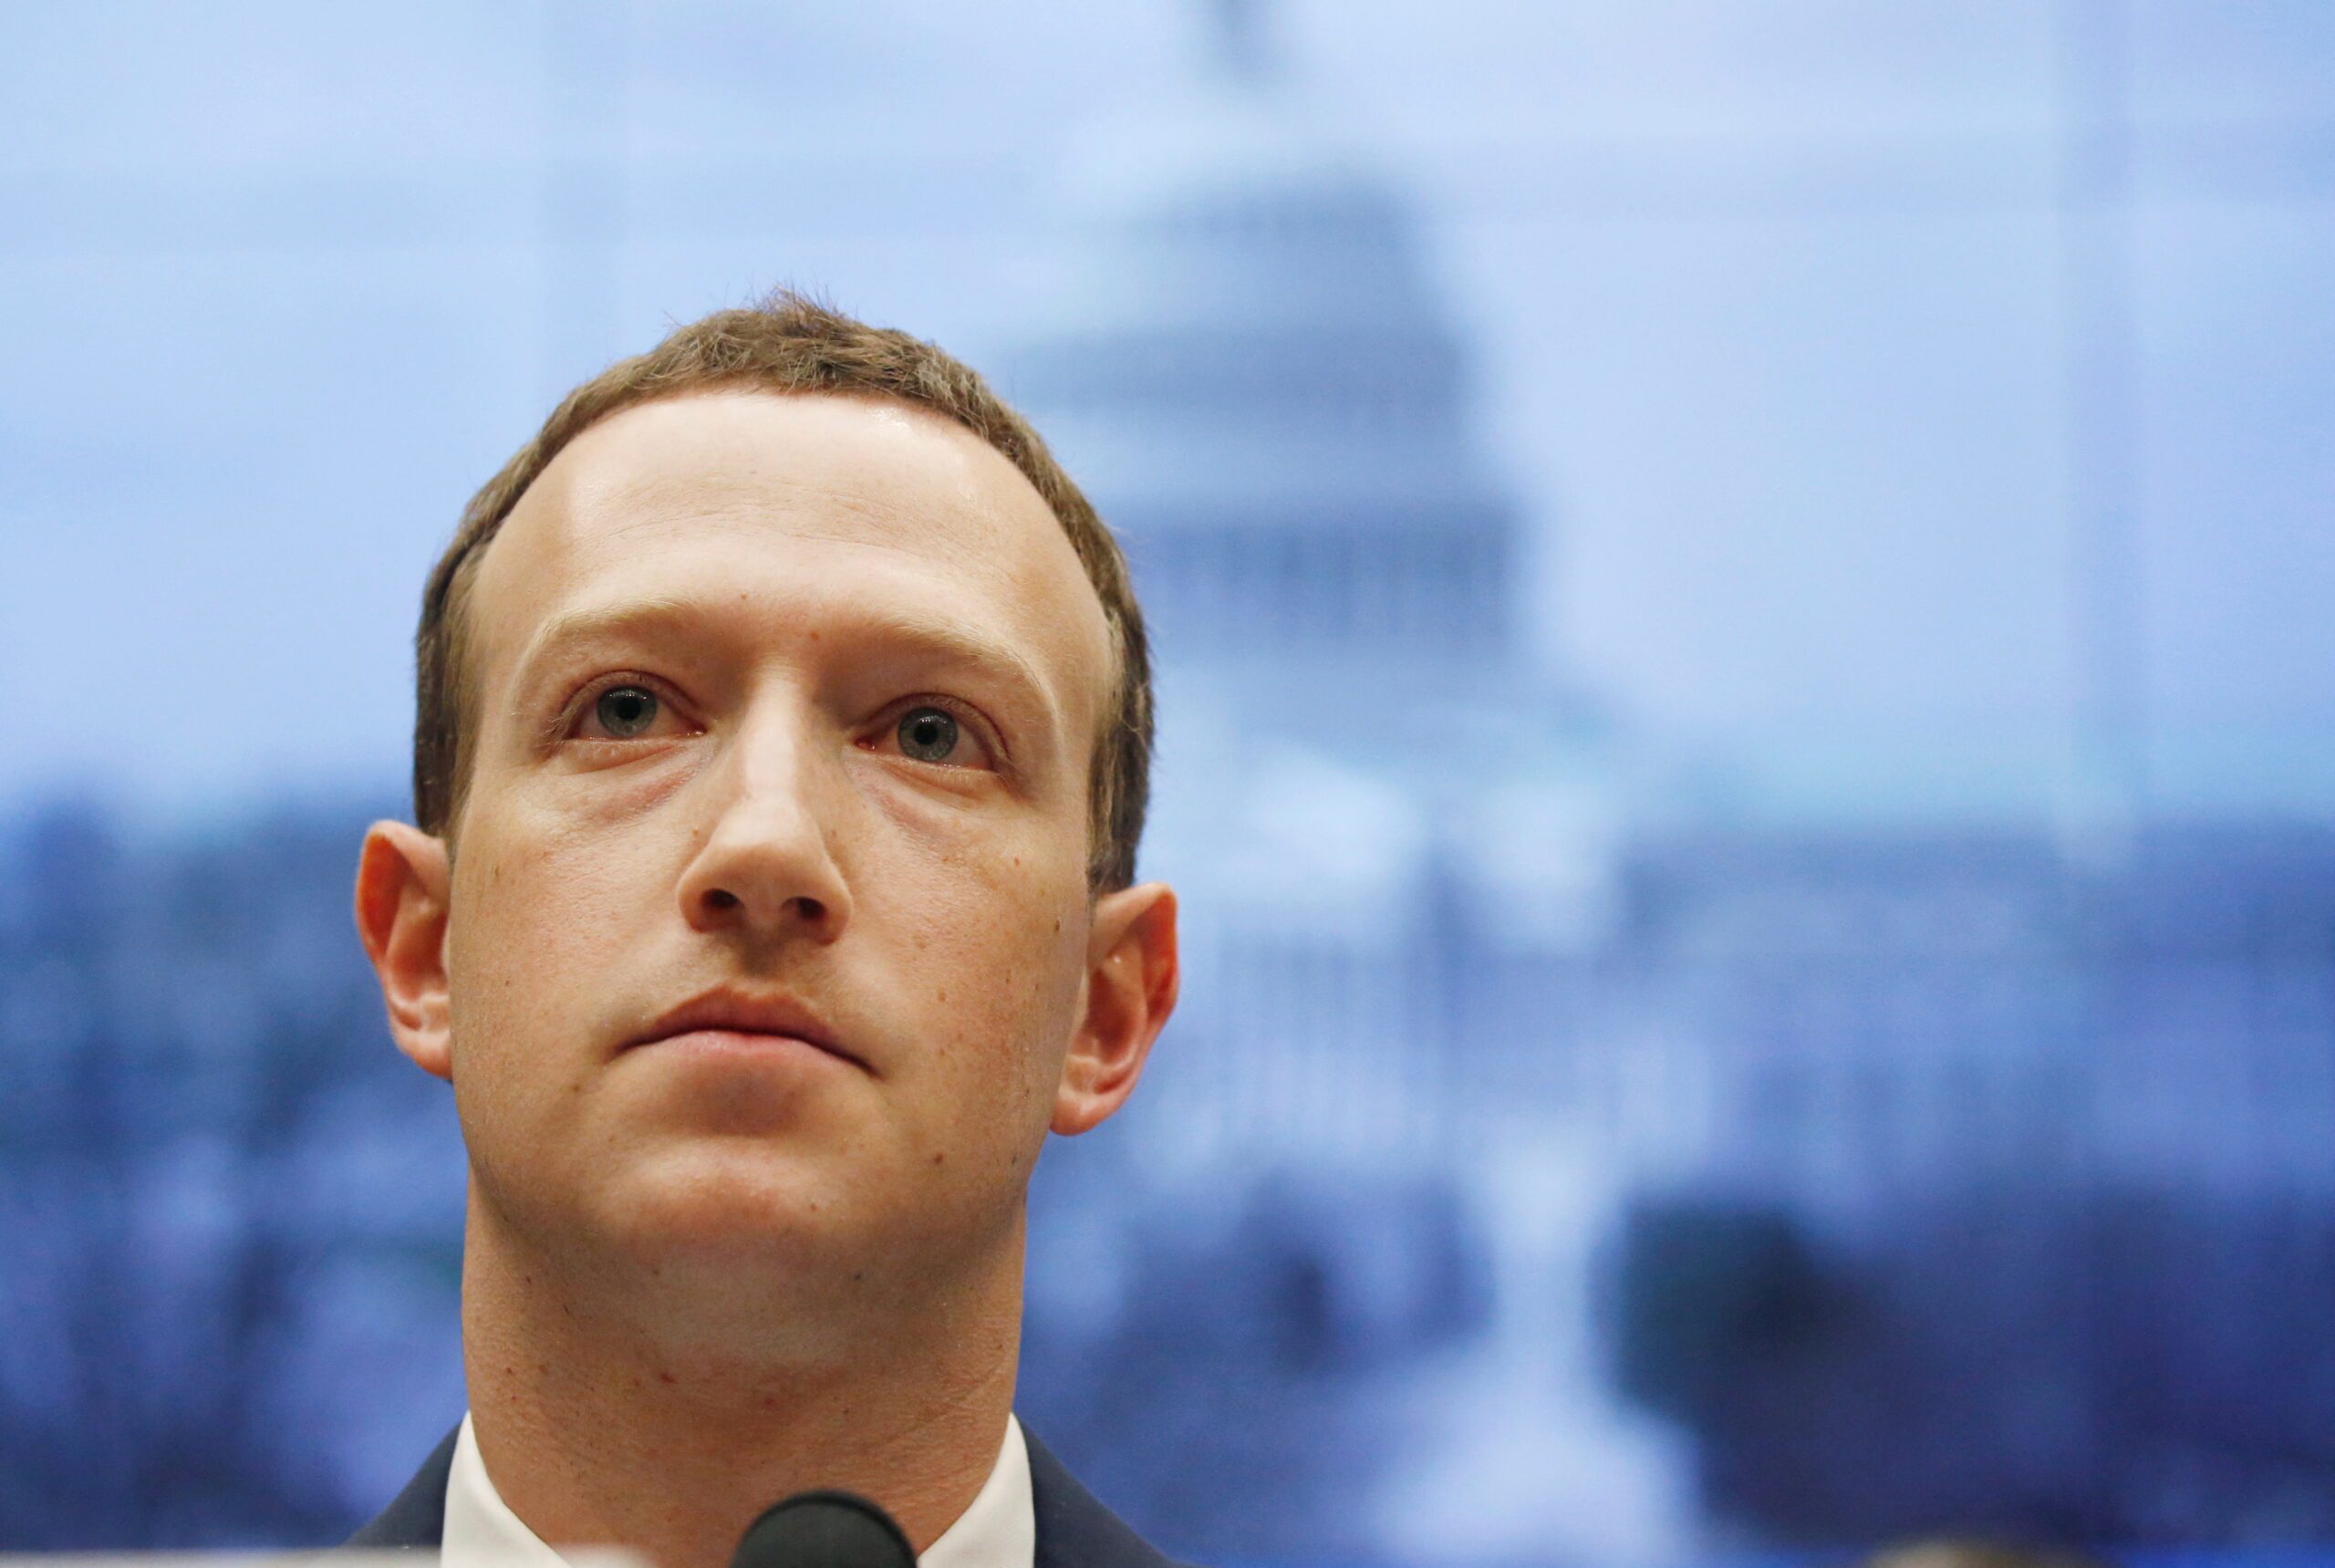 DC Attorney General sues Zuckerberg for role in Cambridge Analytica breach